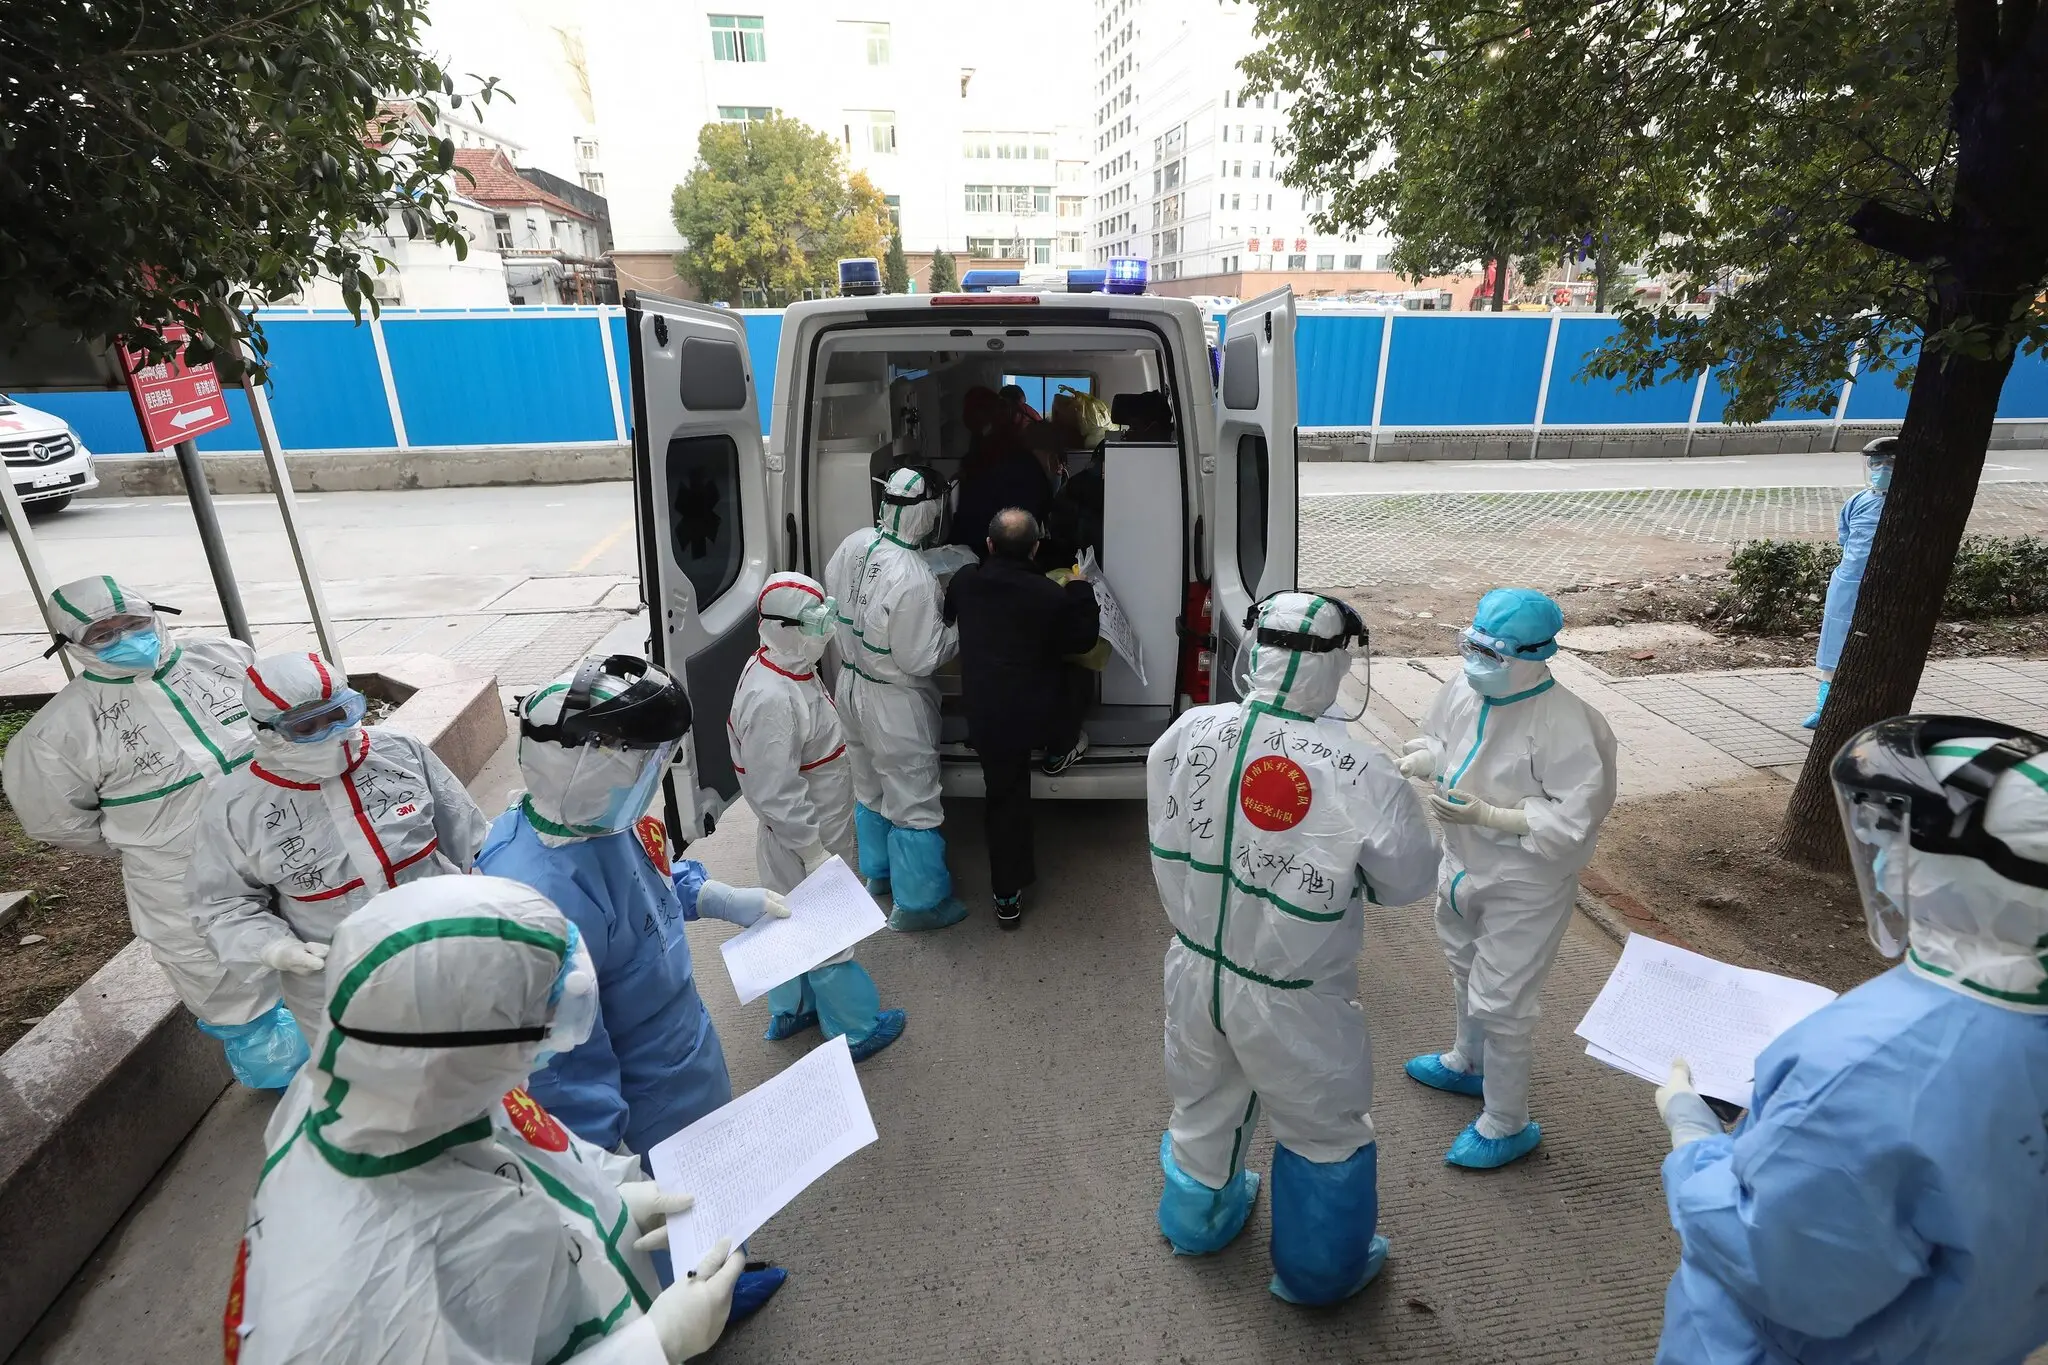 Debate Over Covid-19 Patient Zero in Wuhan China Heats Up